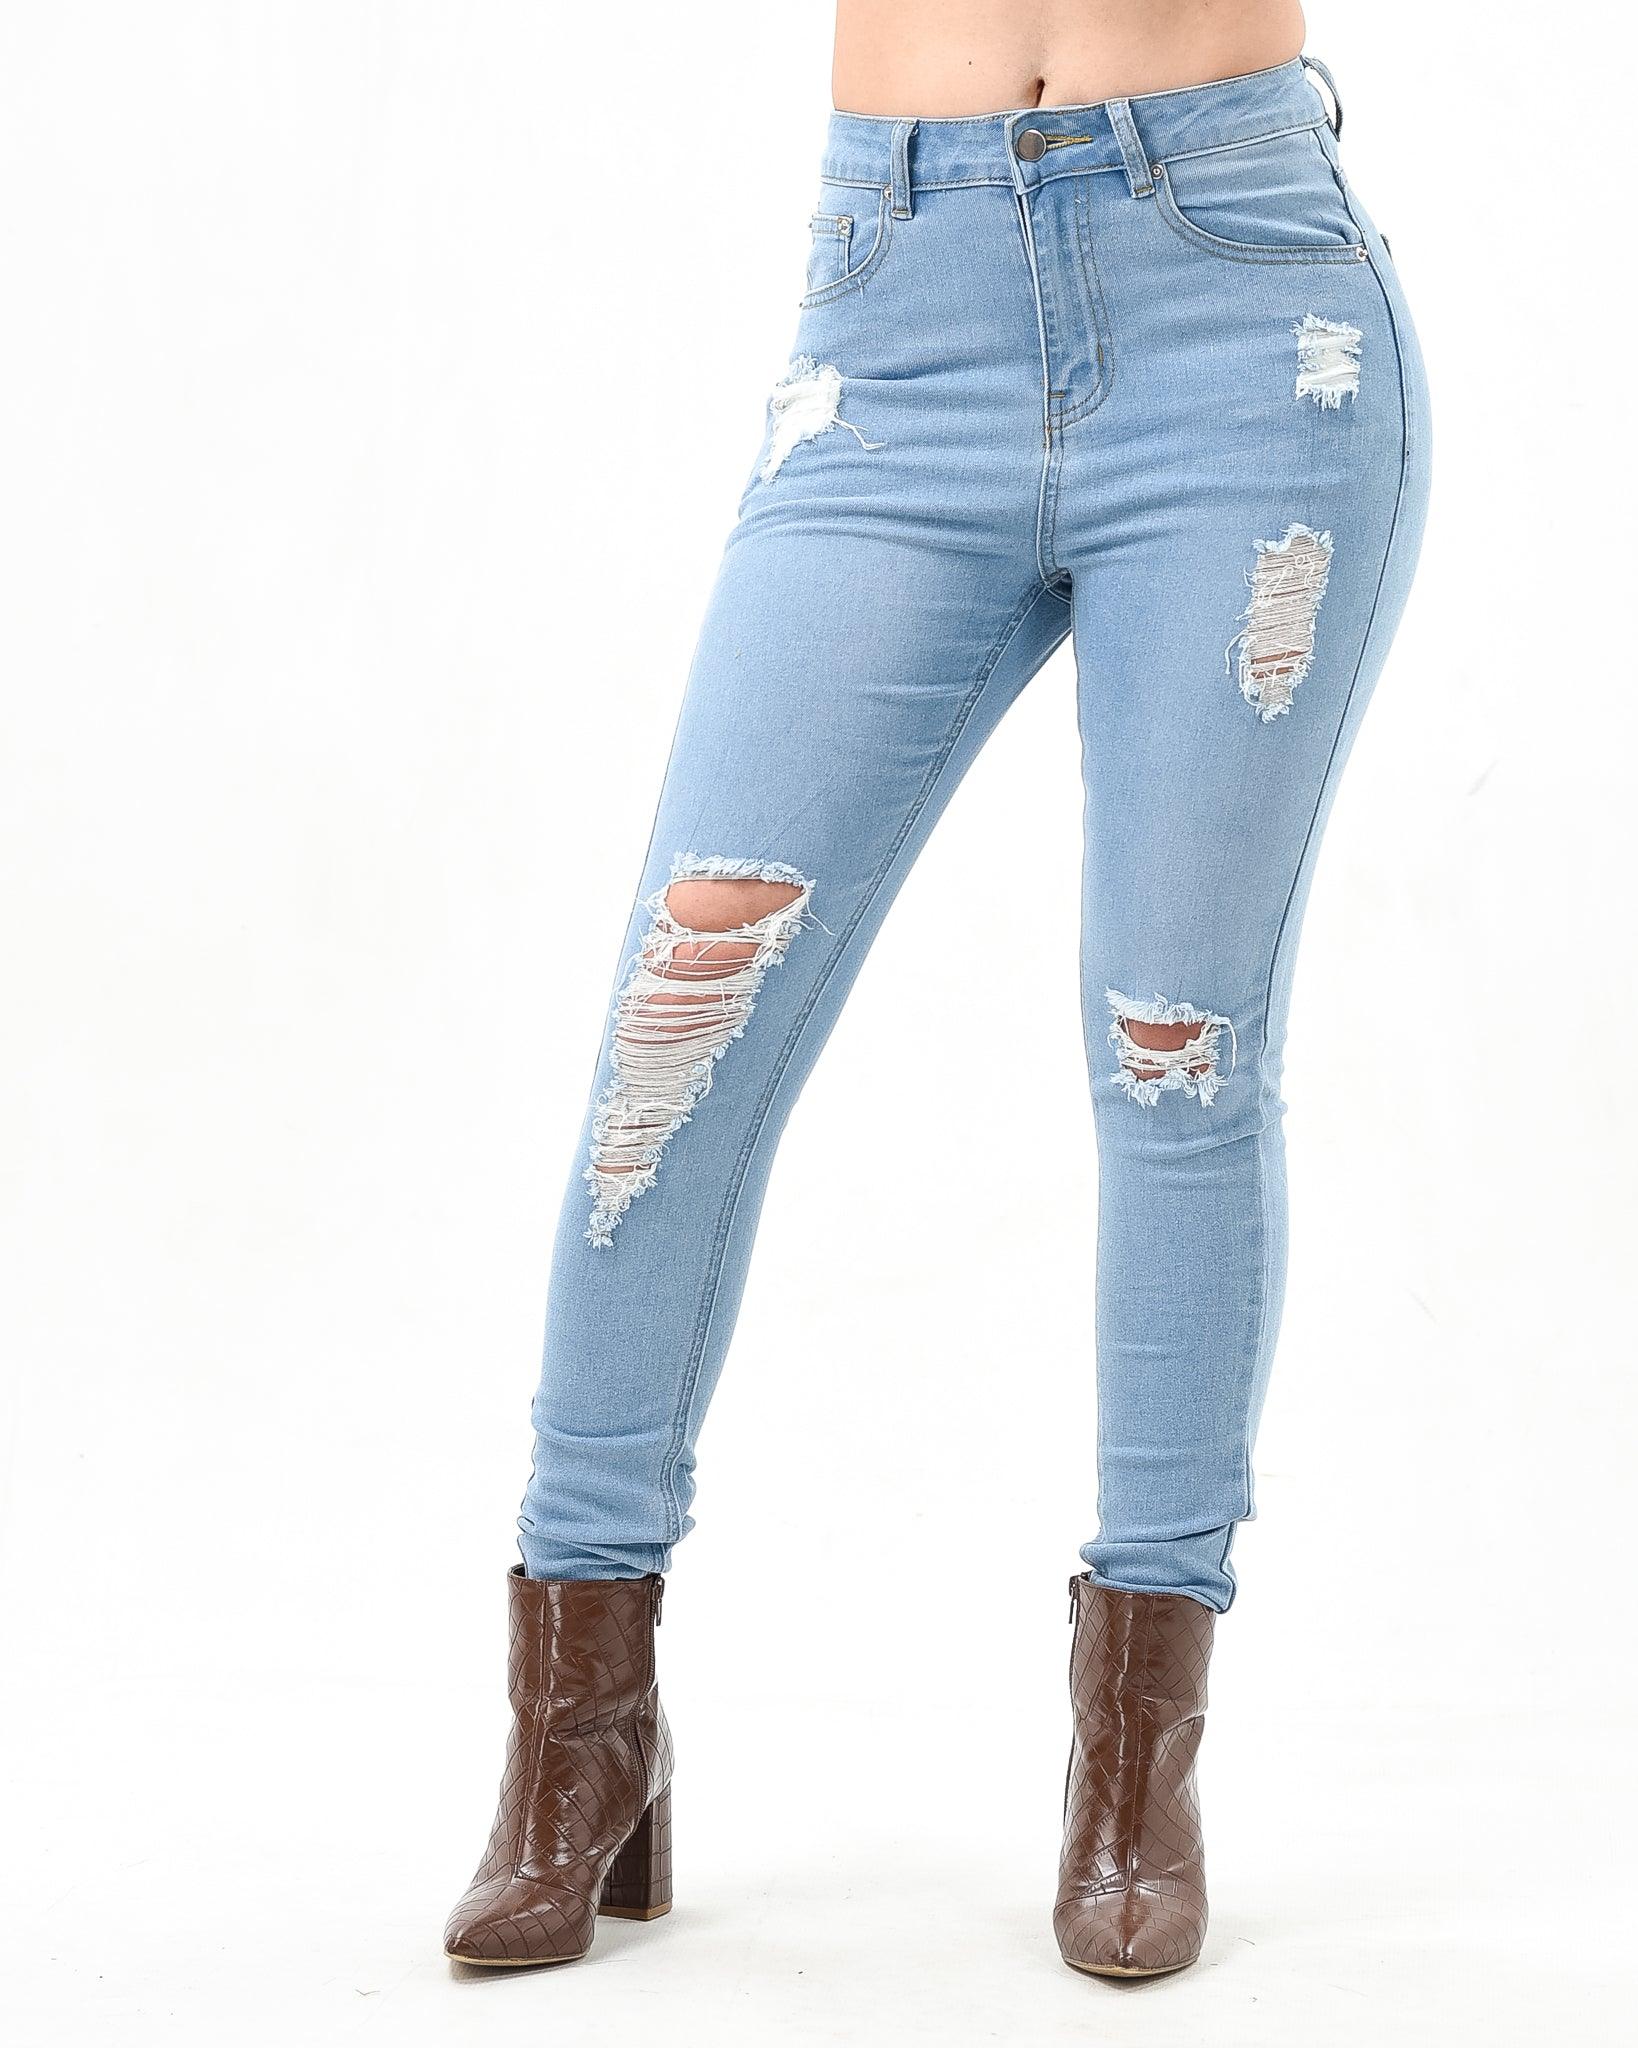 Skinny jeans XD101 - XD21